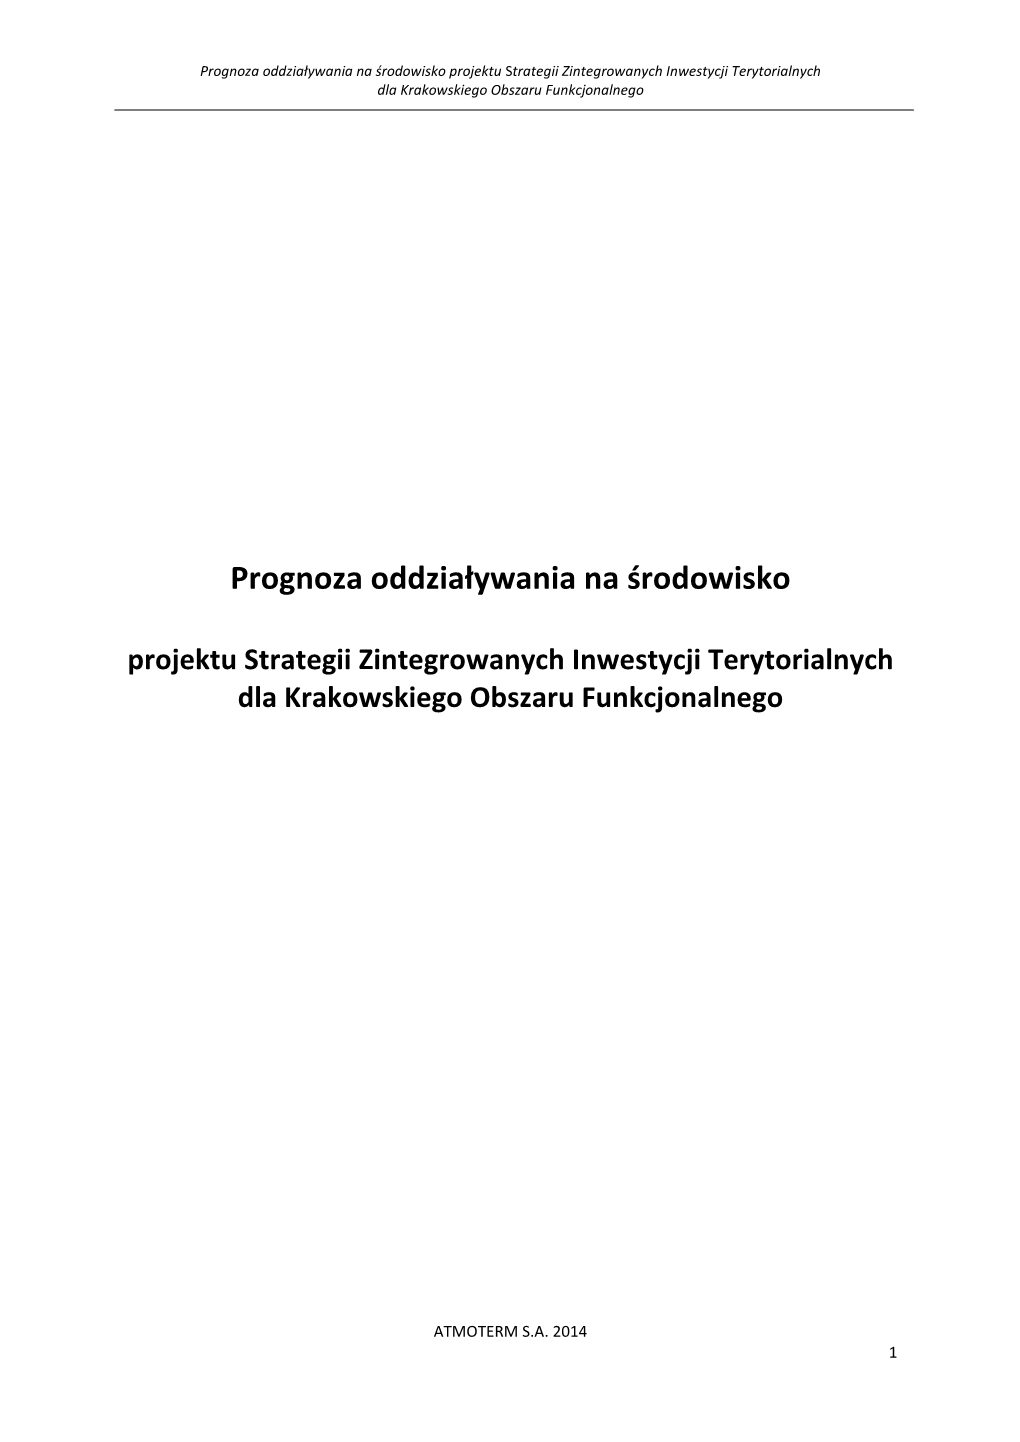 Prognoza Oddziaływania Na Środowisko Projektu Strategii Zintegrowanych Inwestycji Terytorialnych Dla Krakowskiego Obszaru Funkcjonalnego